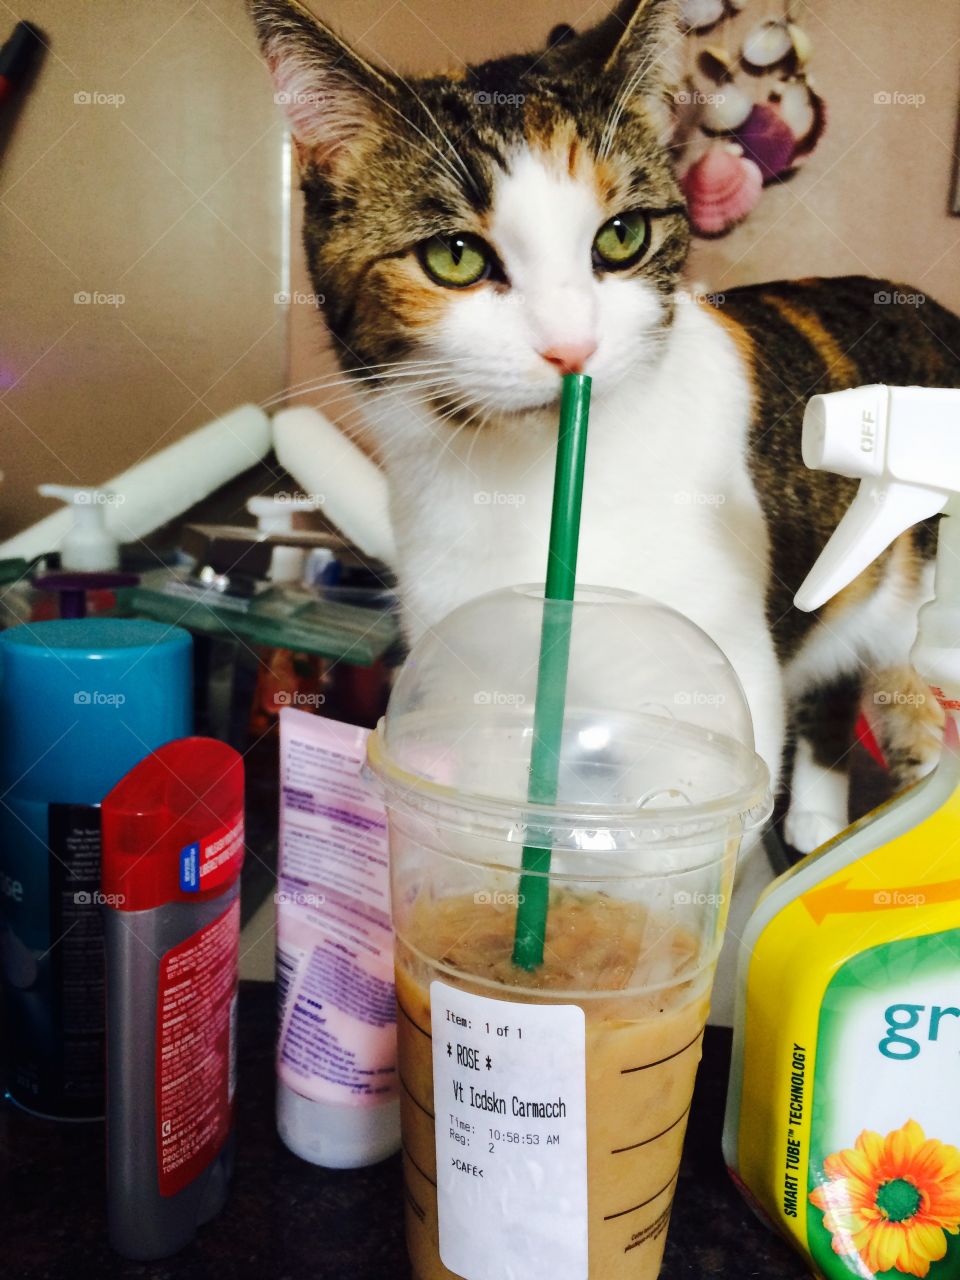 She loves her Starbucks 